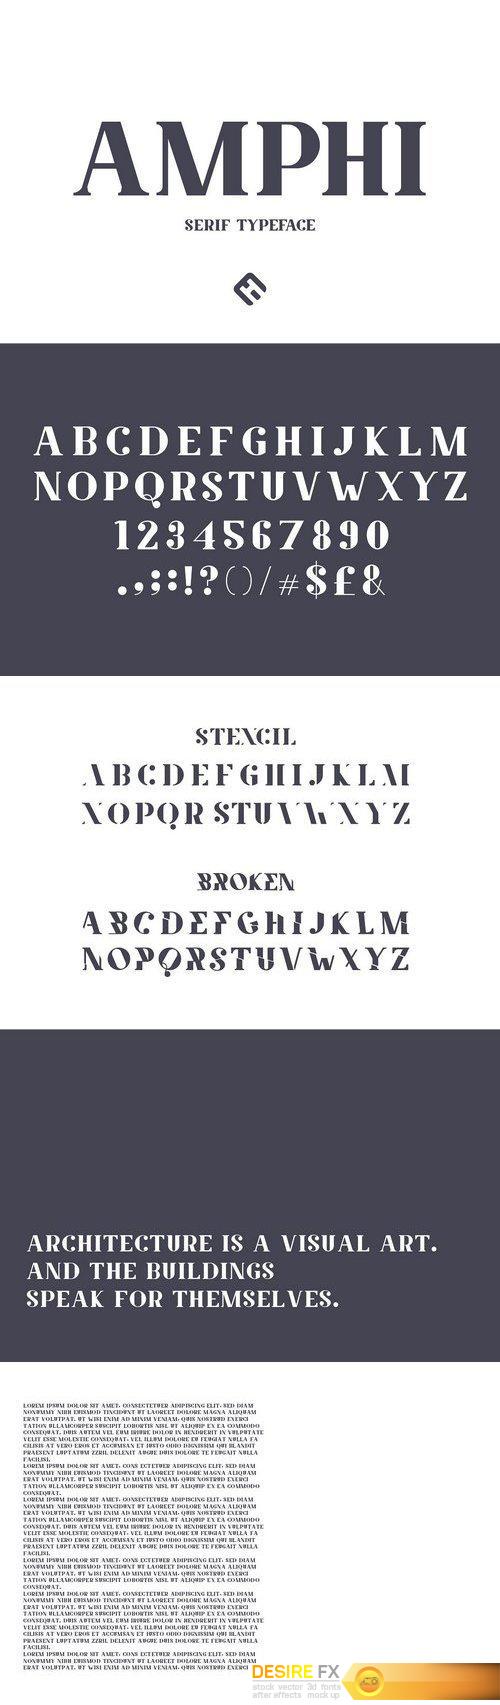 CM - Amphi Typeface 1980913